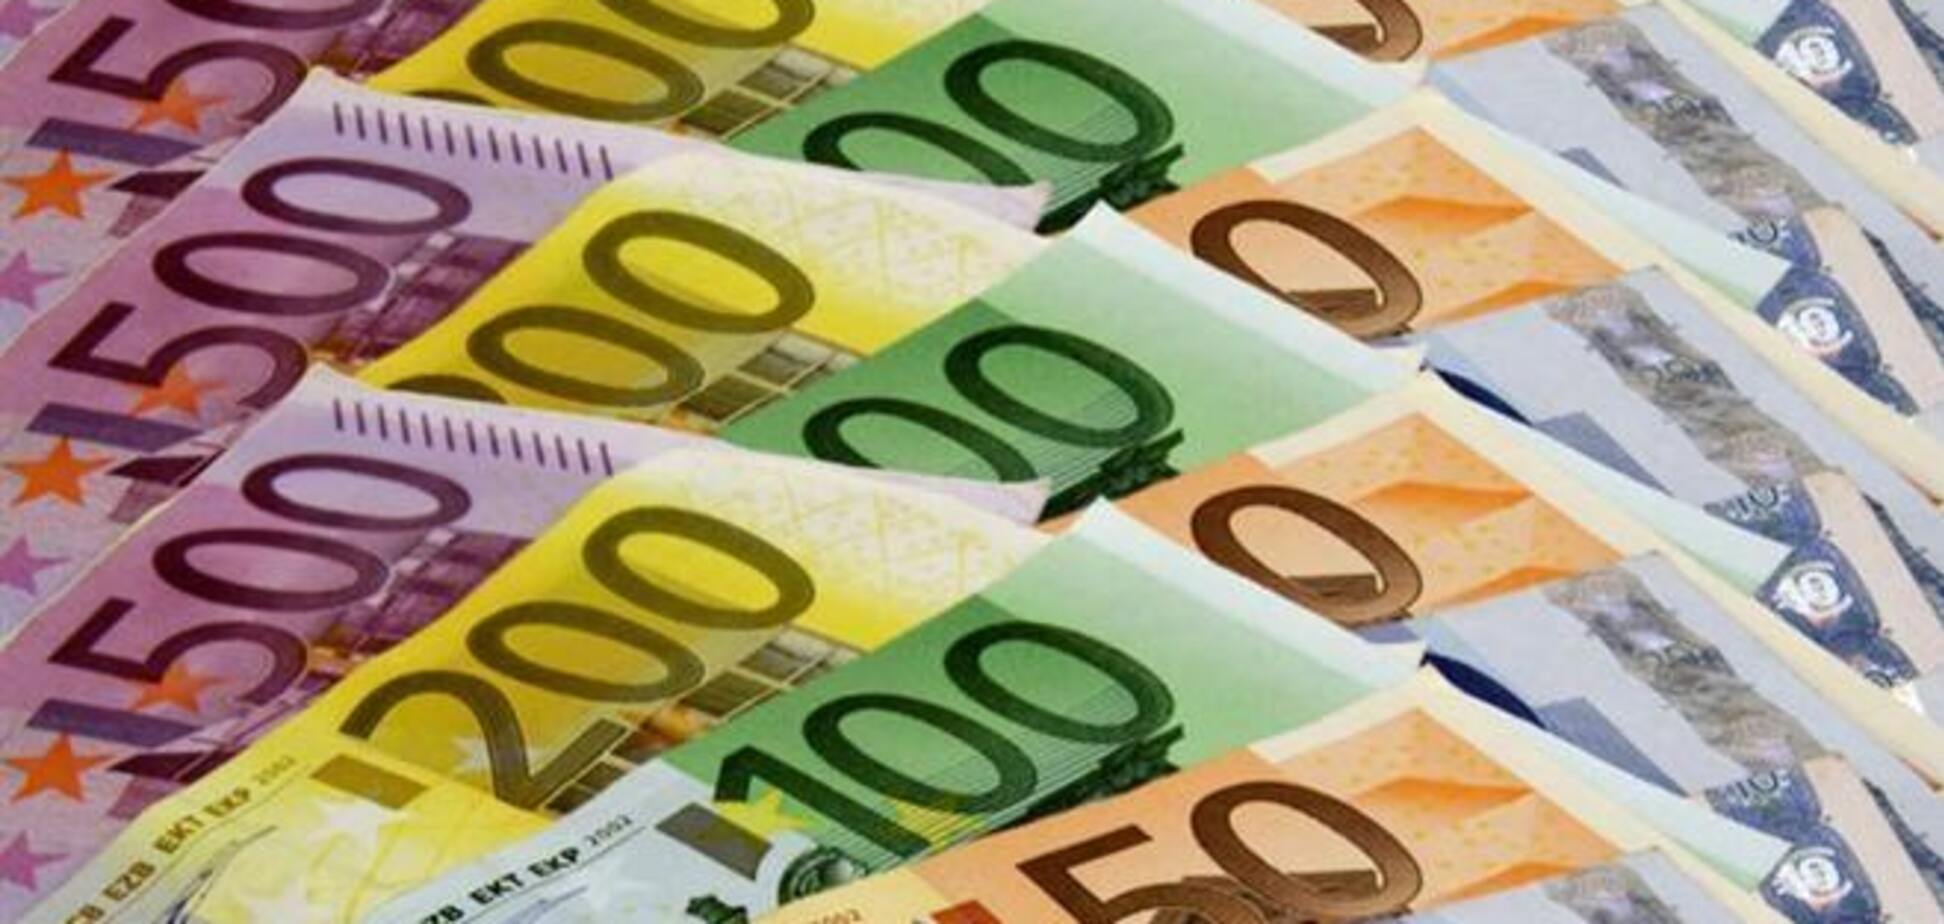 ЕС оштрафует крупнейшие банки за манипуляции со ставками